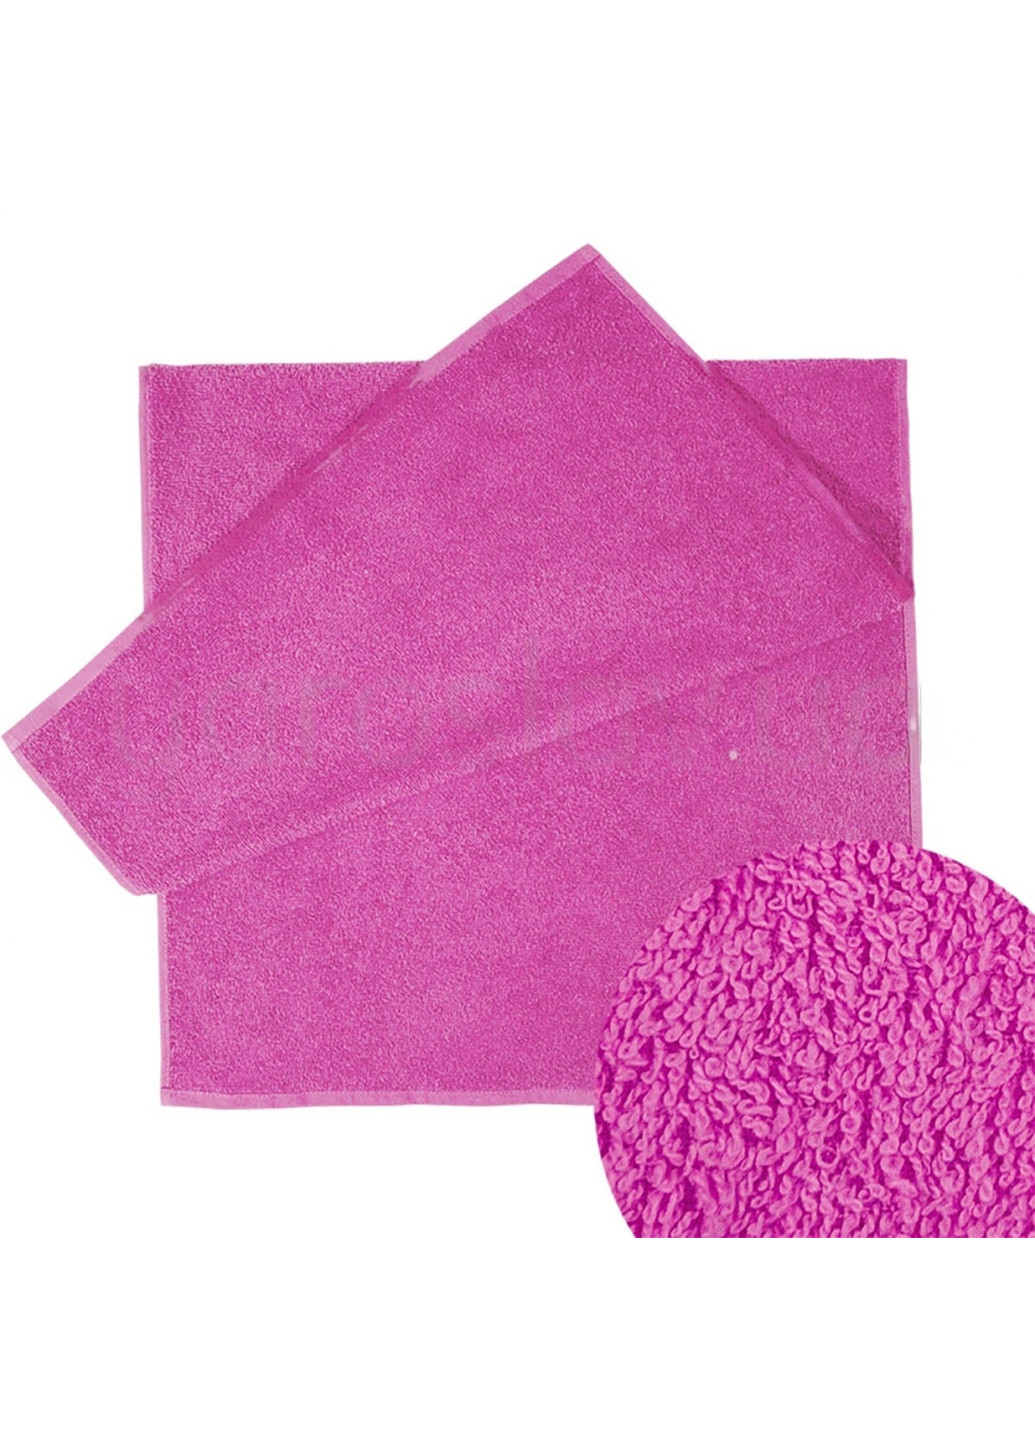 Ярослав полотенце яр-400 махровое 70х140 однотонный темно-розовый производство - Украина